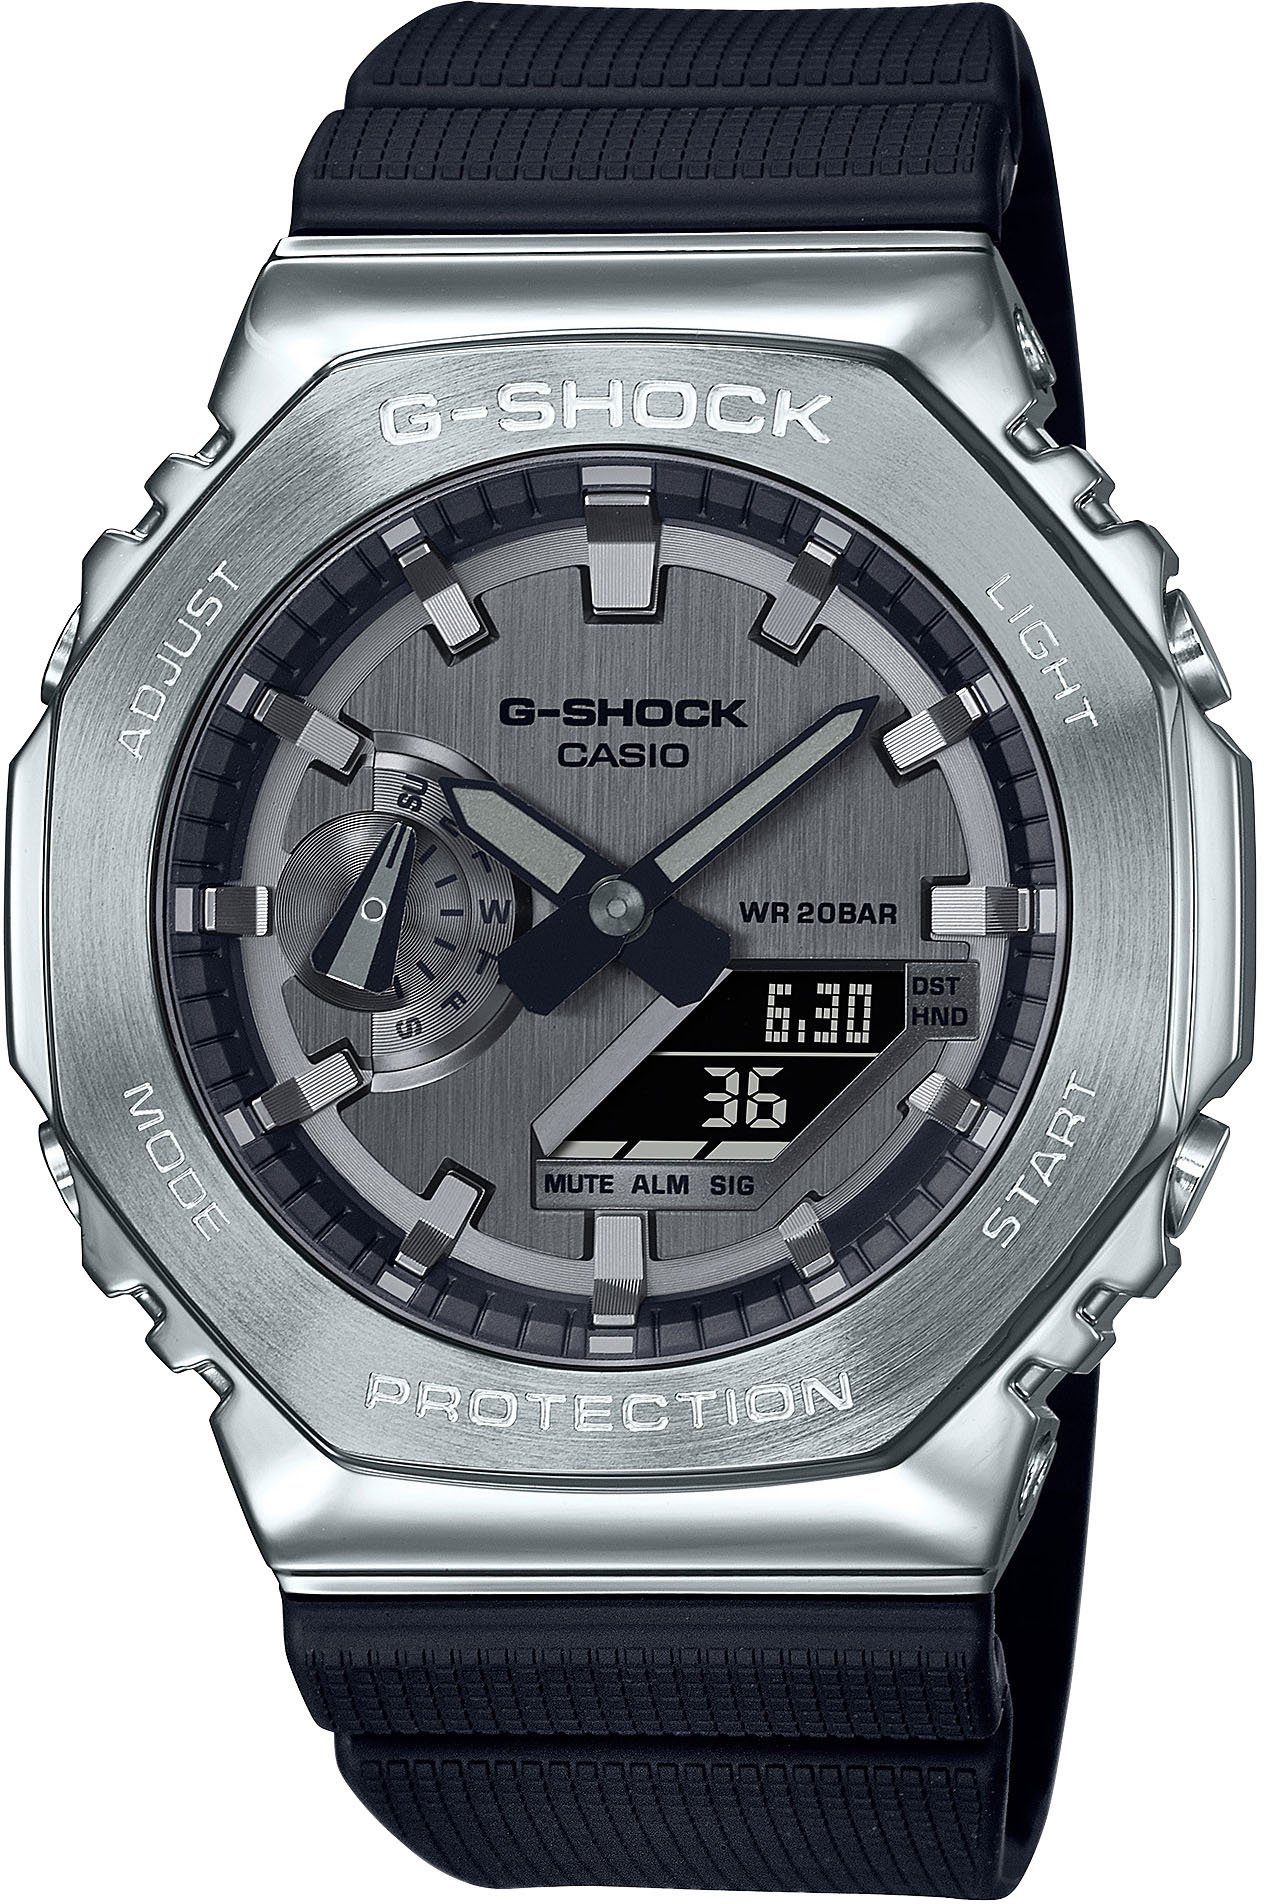 Verkauf neuer Produkte durchgeführt CASIO G-SHOCK Chronograph GM-2100-1AER